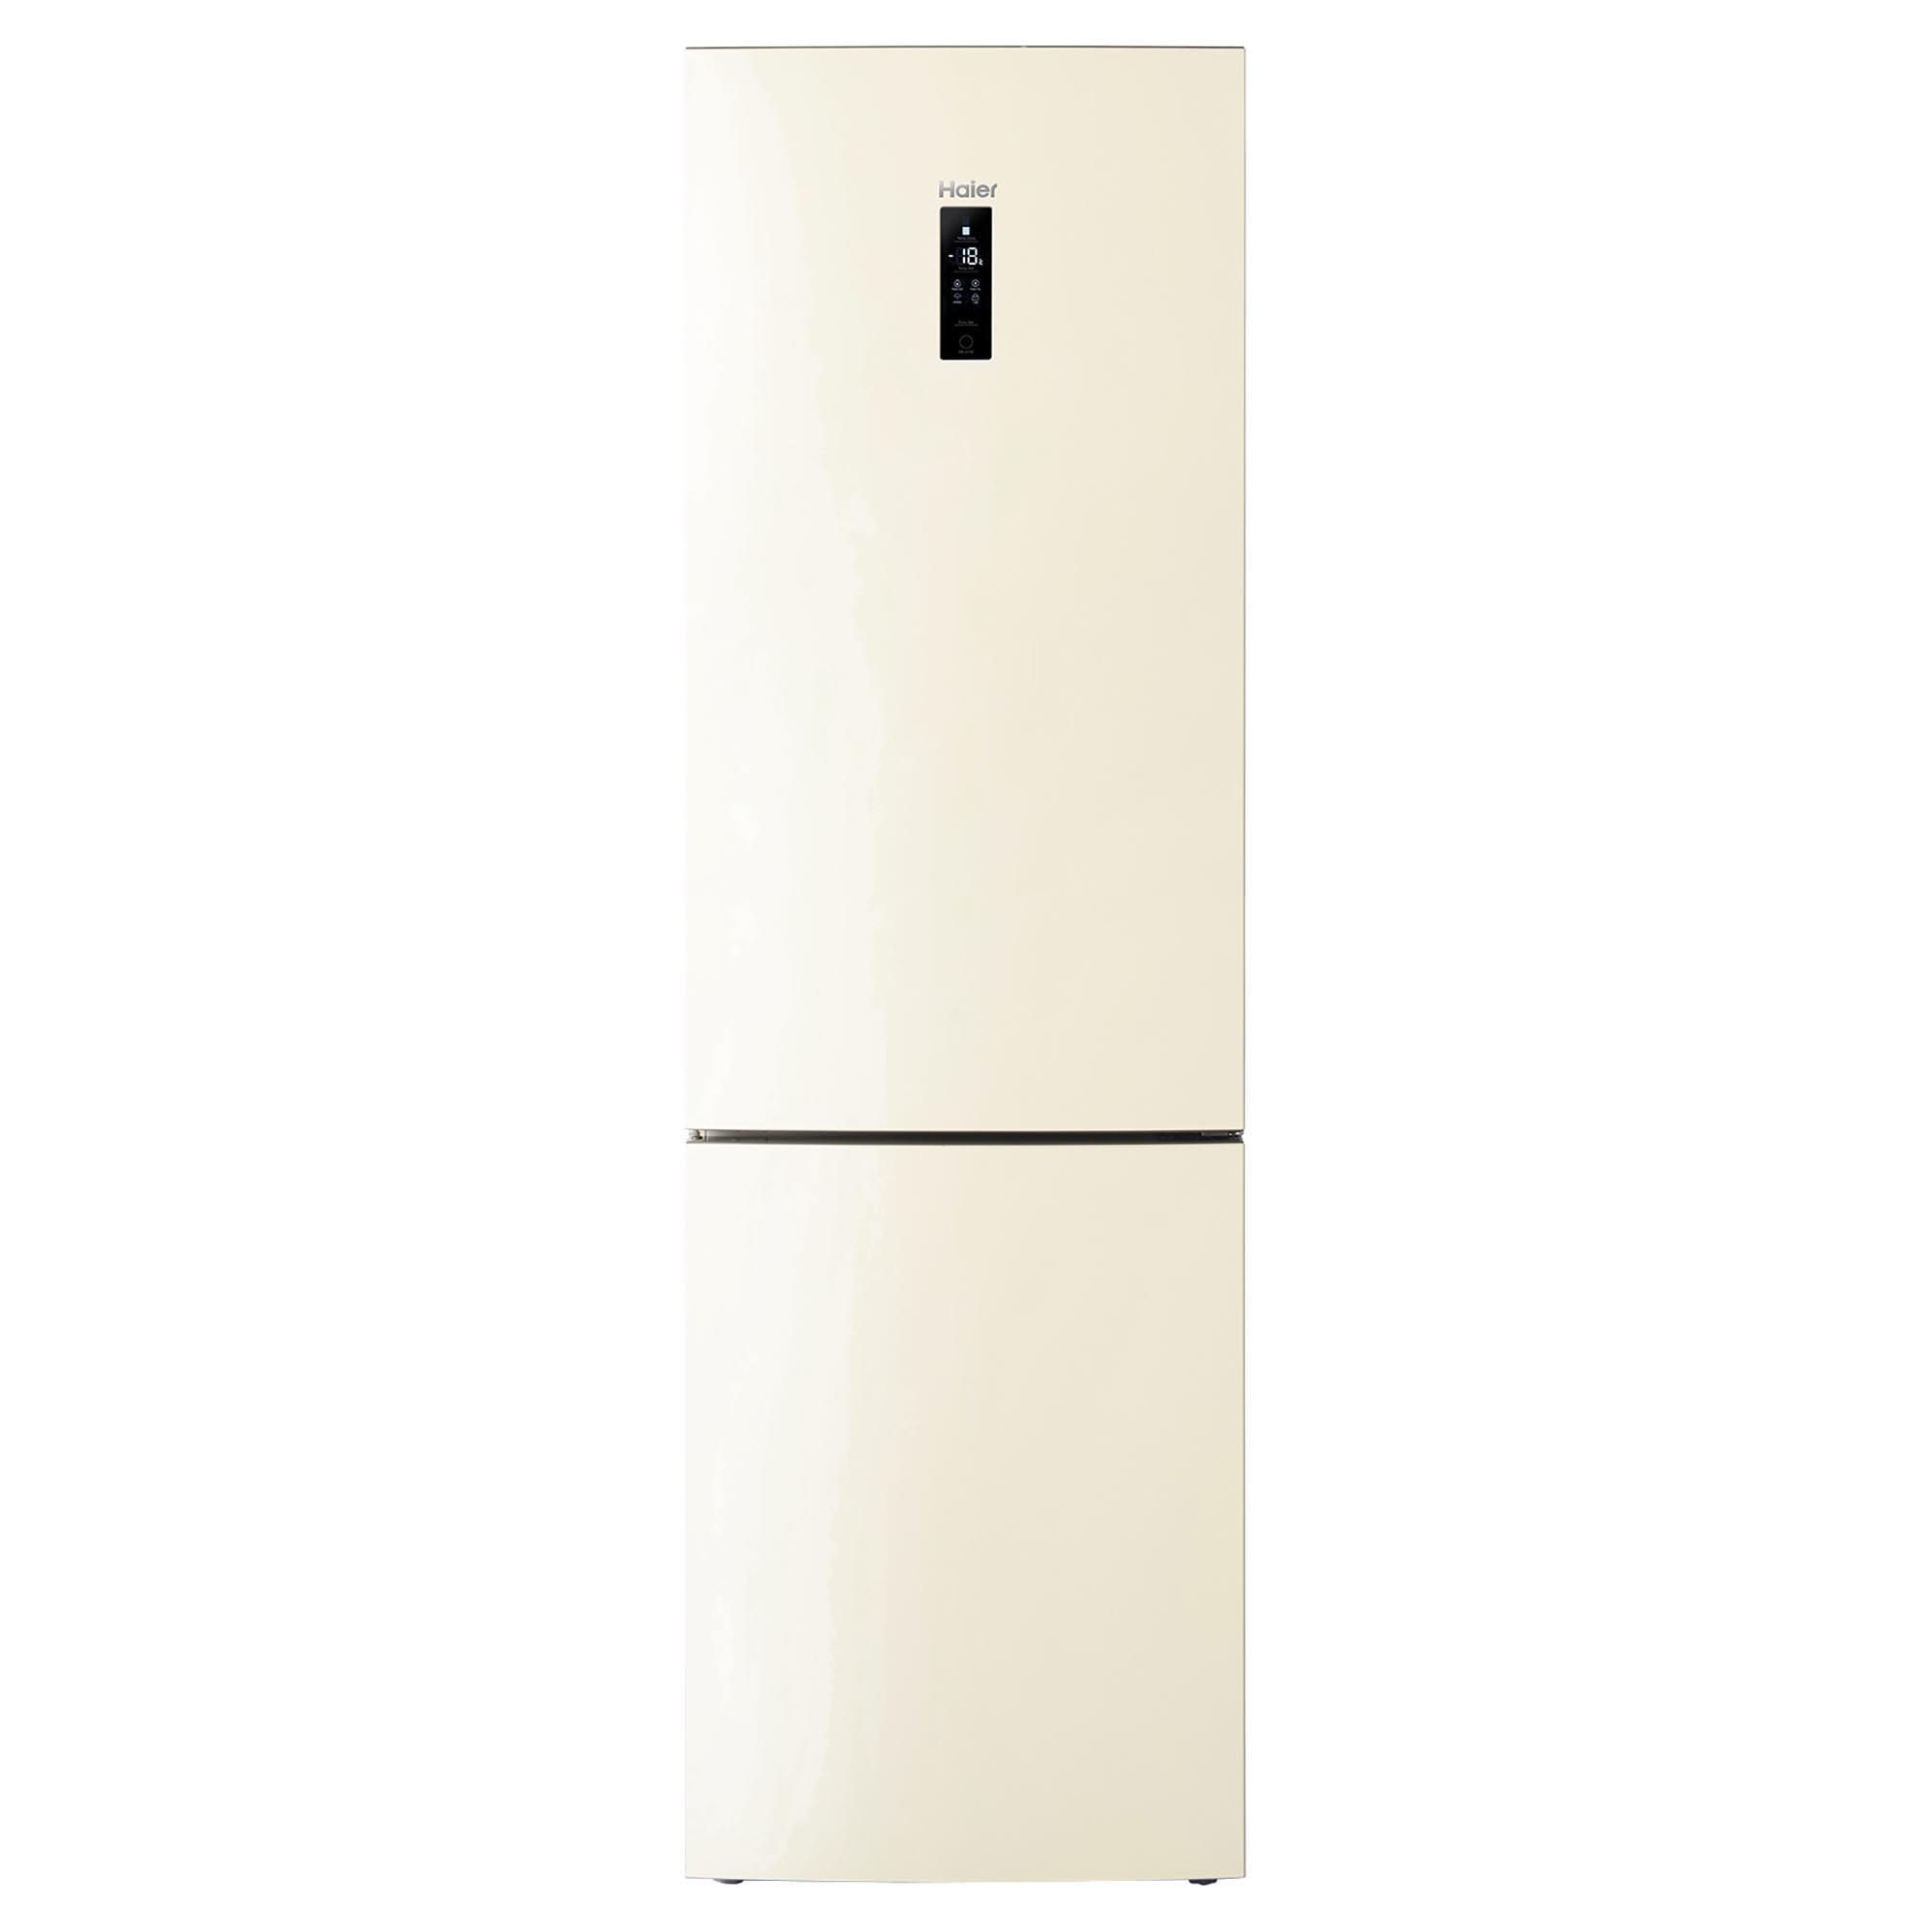 Холодильник бежевый no frost. Холодильник Haier c2f636ccrg бежевый. Холодильник LG ga-b509. Холодильник Haier c2f637ccg. Холодильник Haier c2f636ccrg цвет бежевый (уценка).